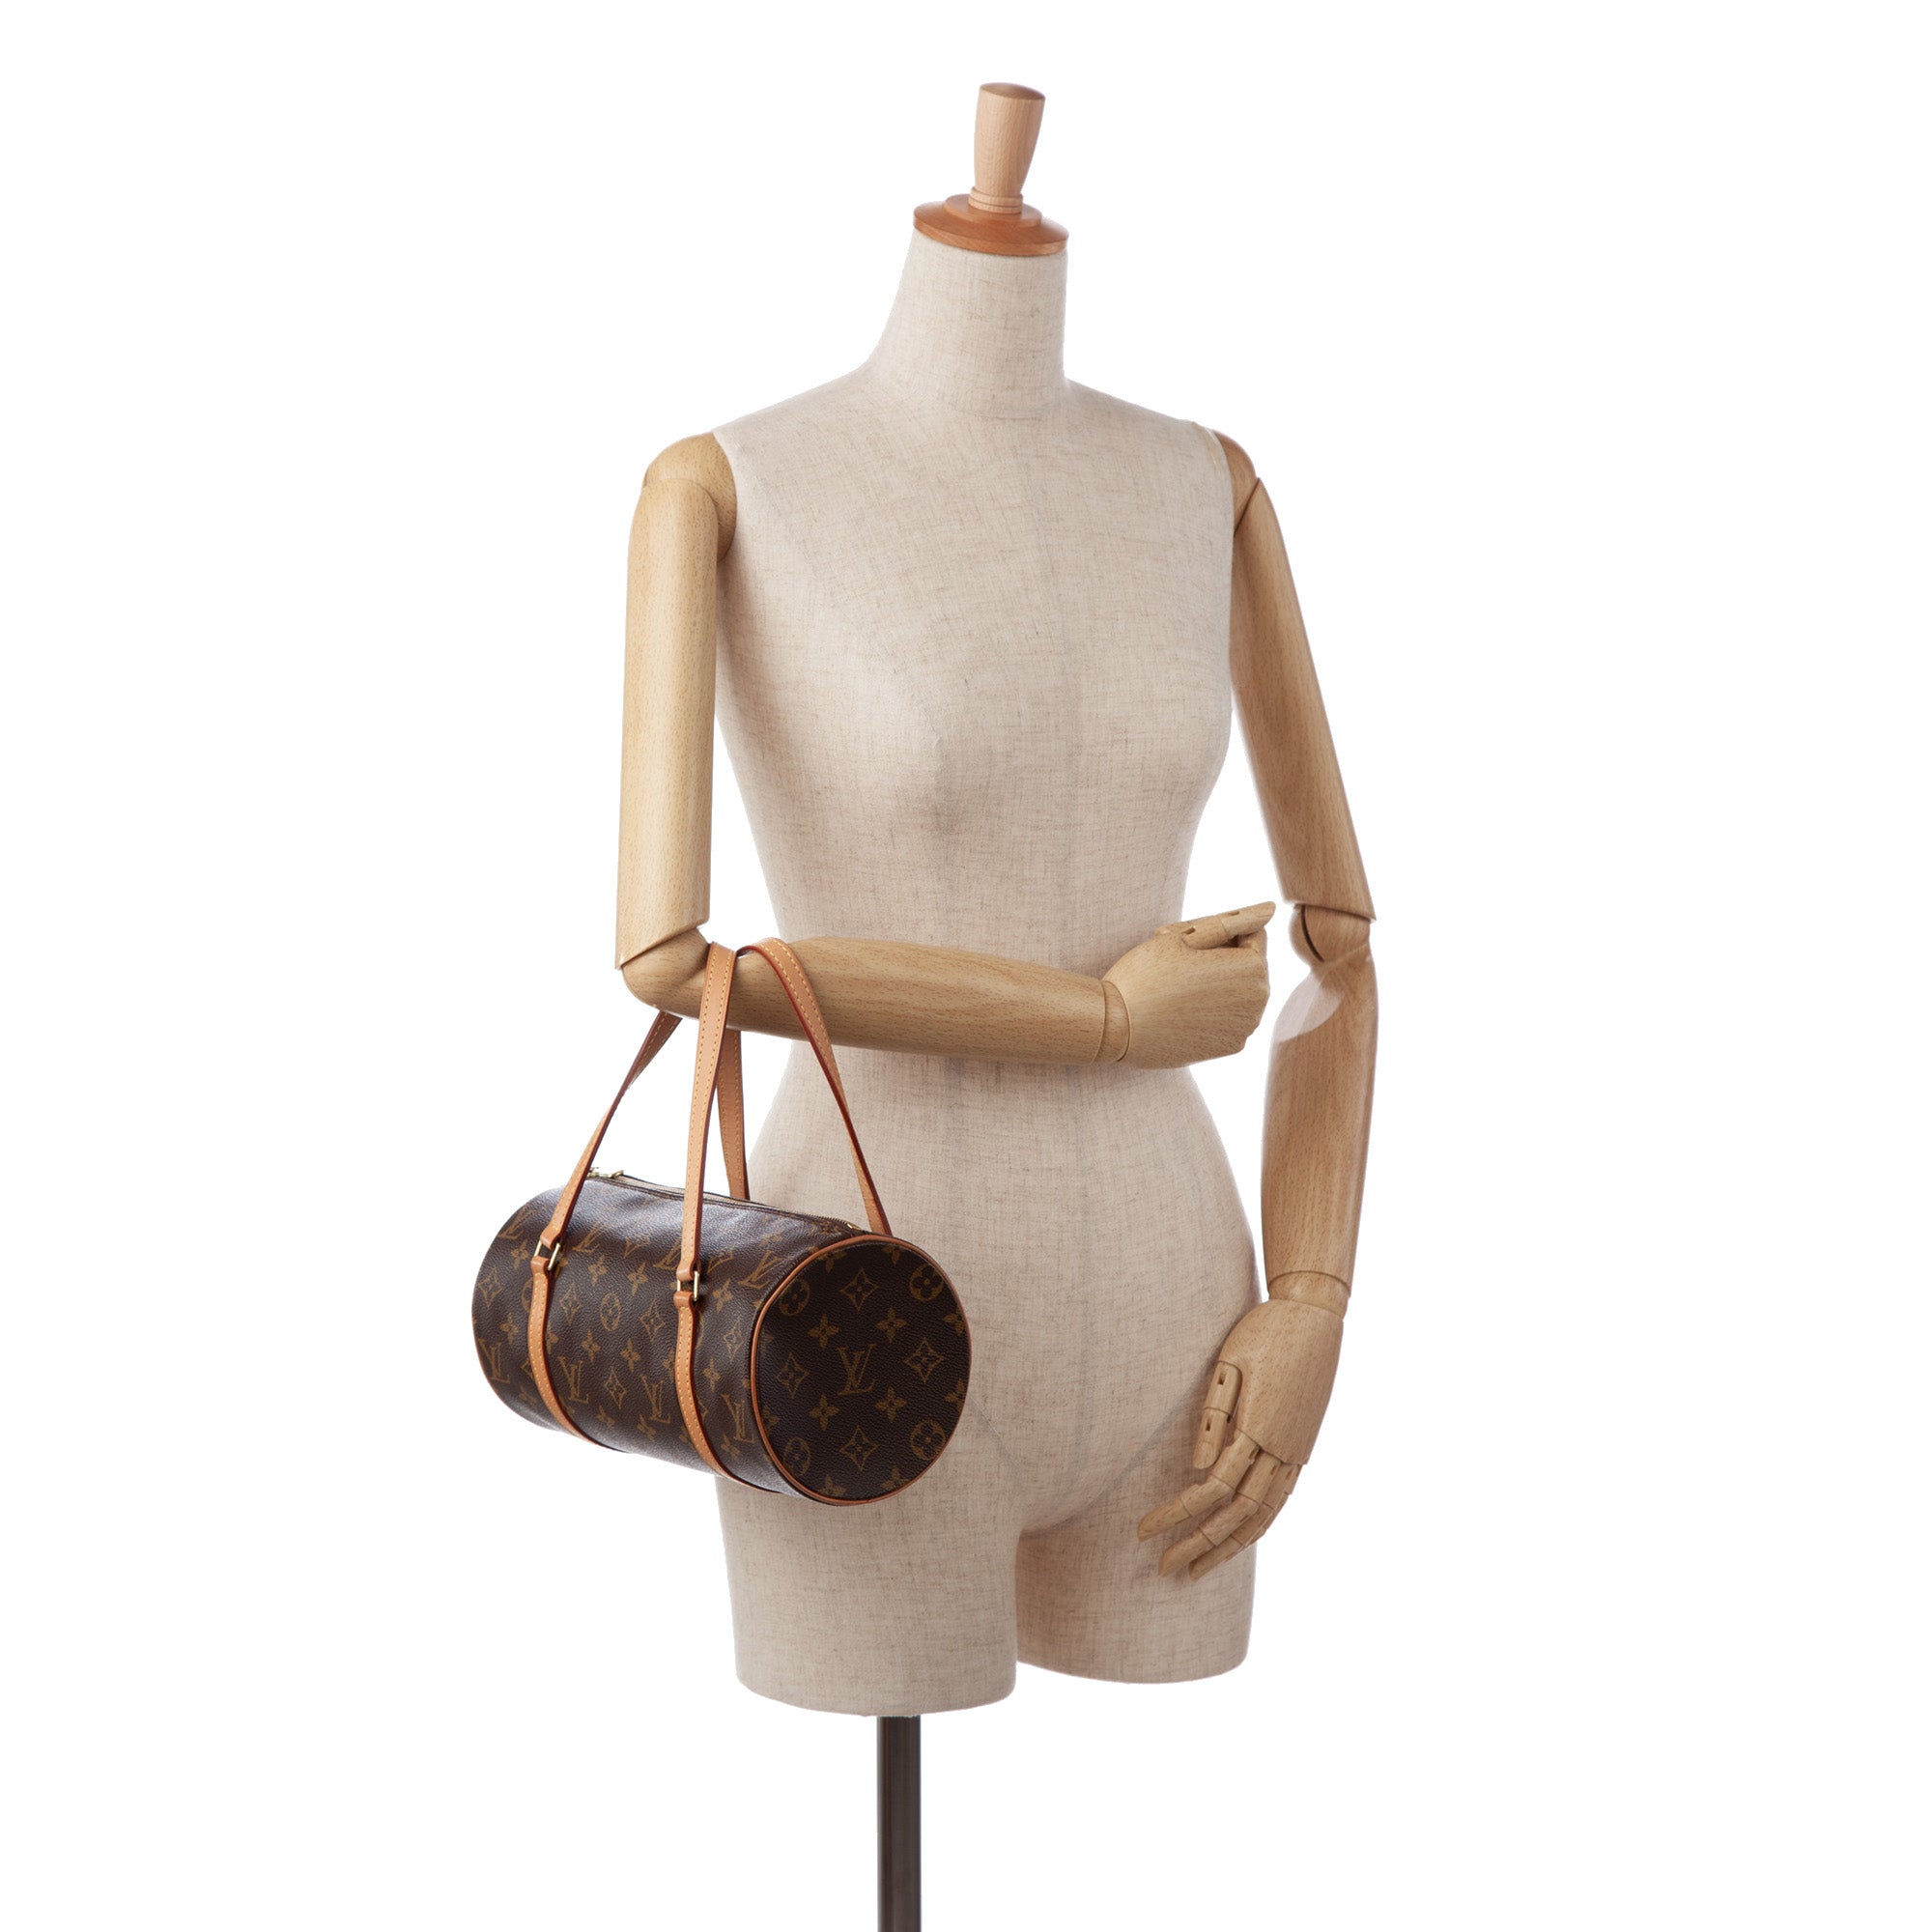 Louis Vuitton Vintage Monogram Papillon 30 - Brown Handle Bags, Handbags -  LOU404282